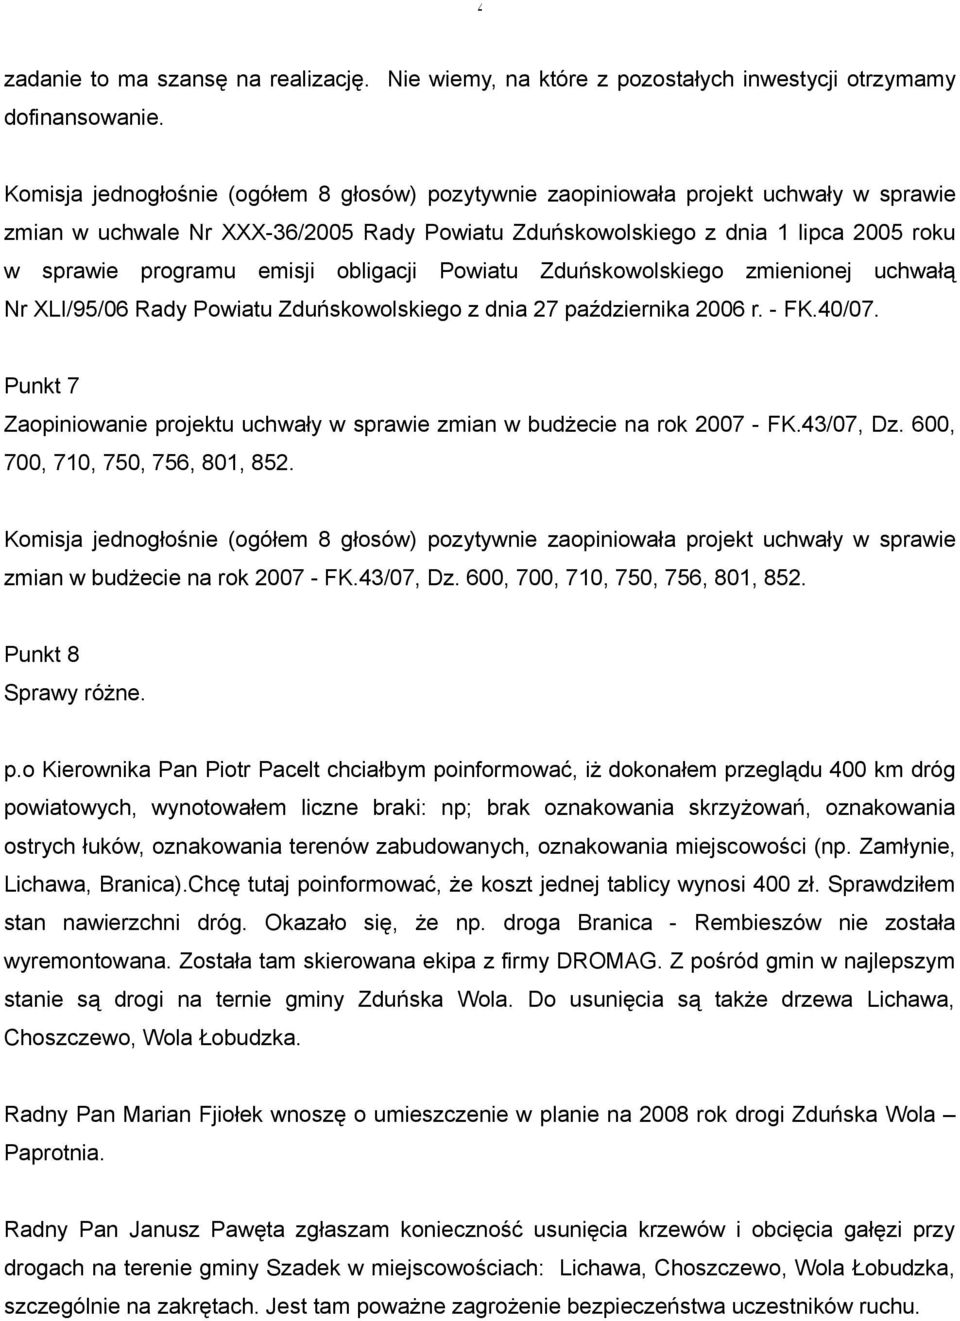 emisji obligacji Powiatu Zduńskowolskiego zmienionej uchwałą Nr XLI/95/06 Rady Powiatu Zduńskowolskiego z dnia 27 października 2006 r. - FK.40/07.